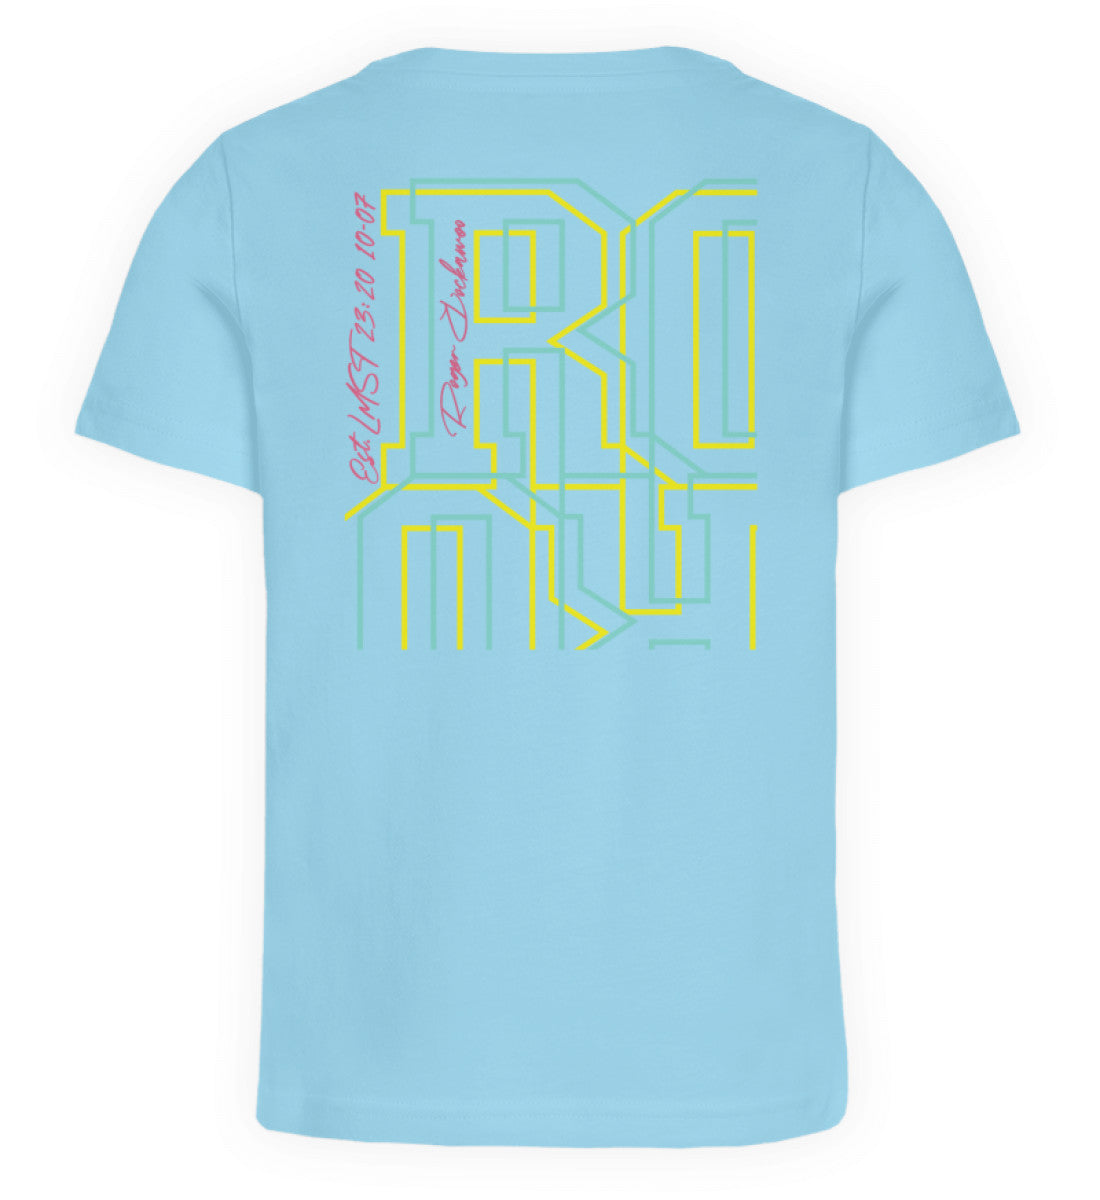 Himmelblau farbiges Kinder T-Shirt für Mädchen und Jungen bedruckt mit dem Design der Roger Rockawoo Kollektion Interplanetary Surf Society